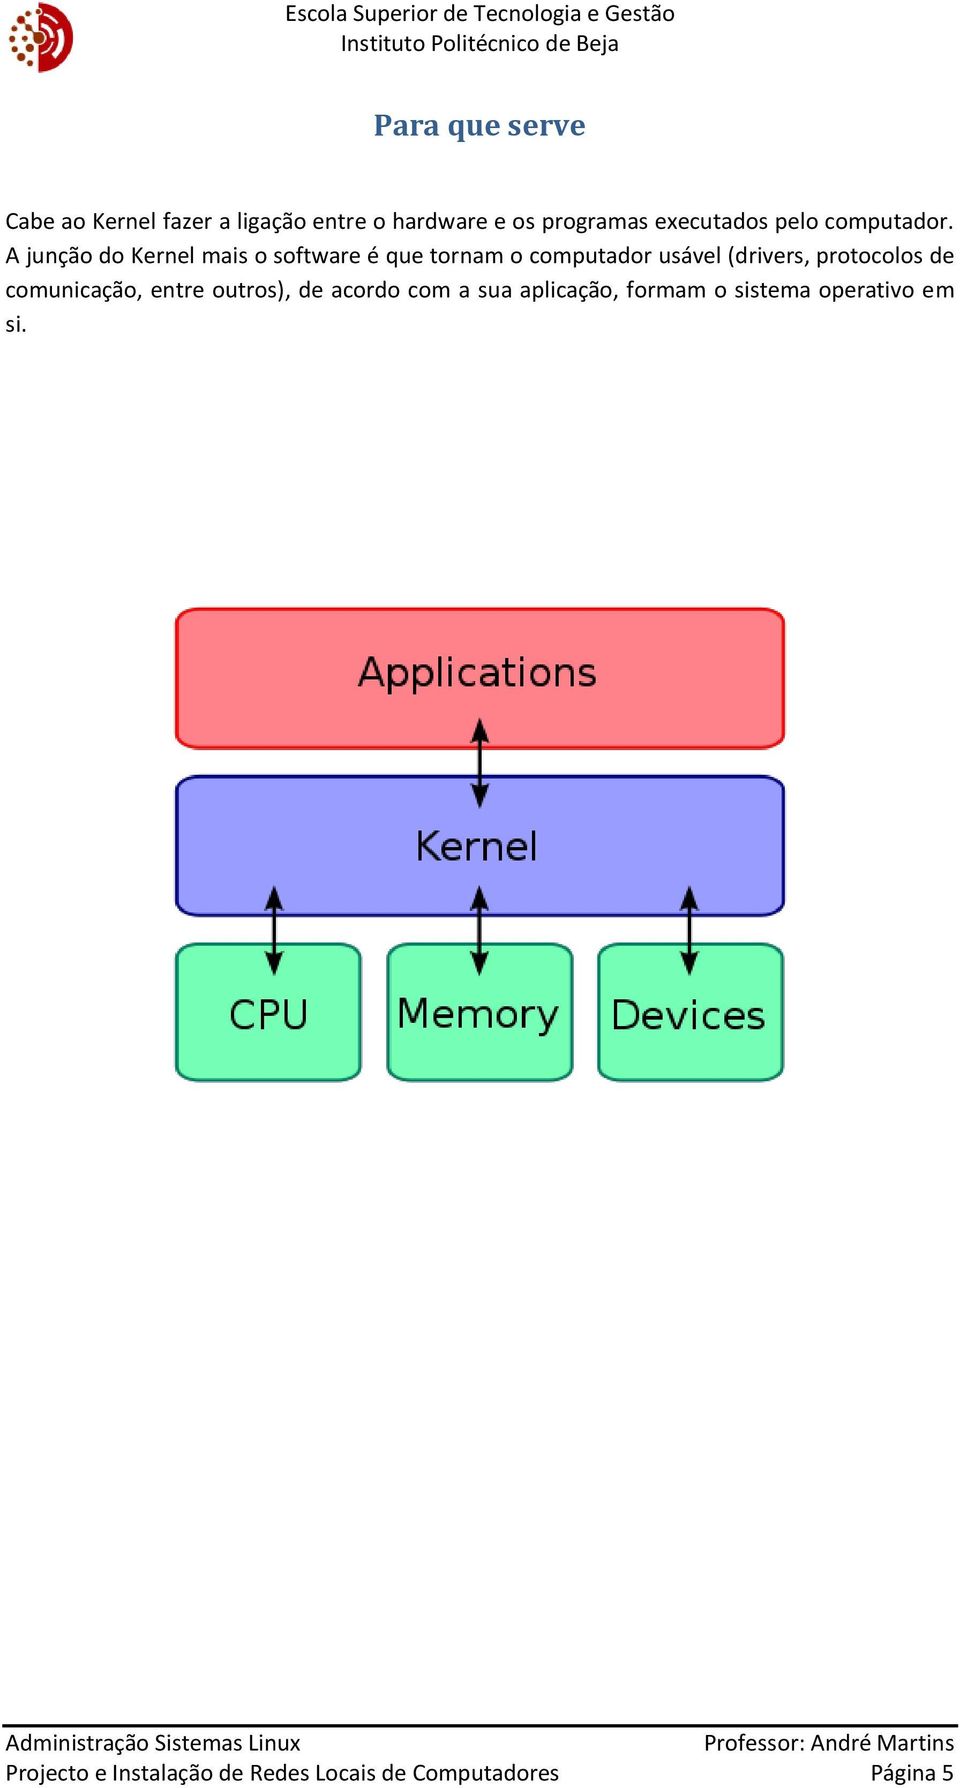 A junção do Kernel mais o software é que tornam o computador usável (drivers, protocolos